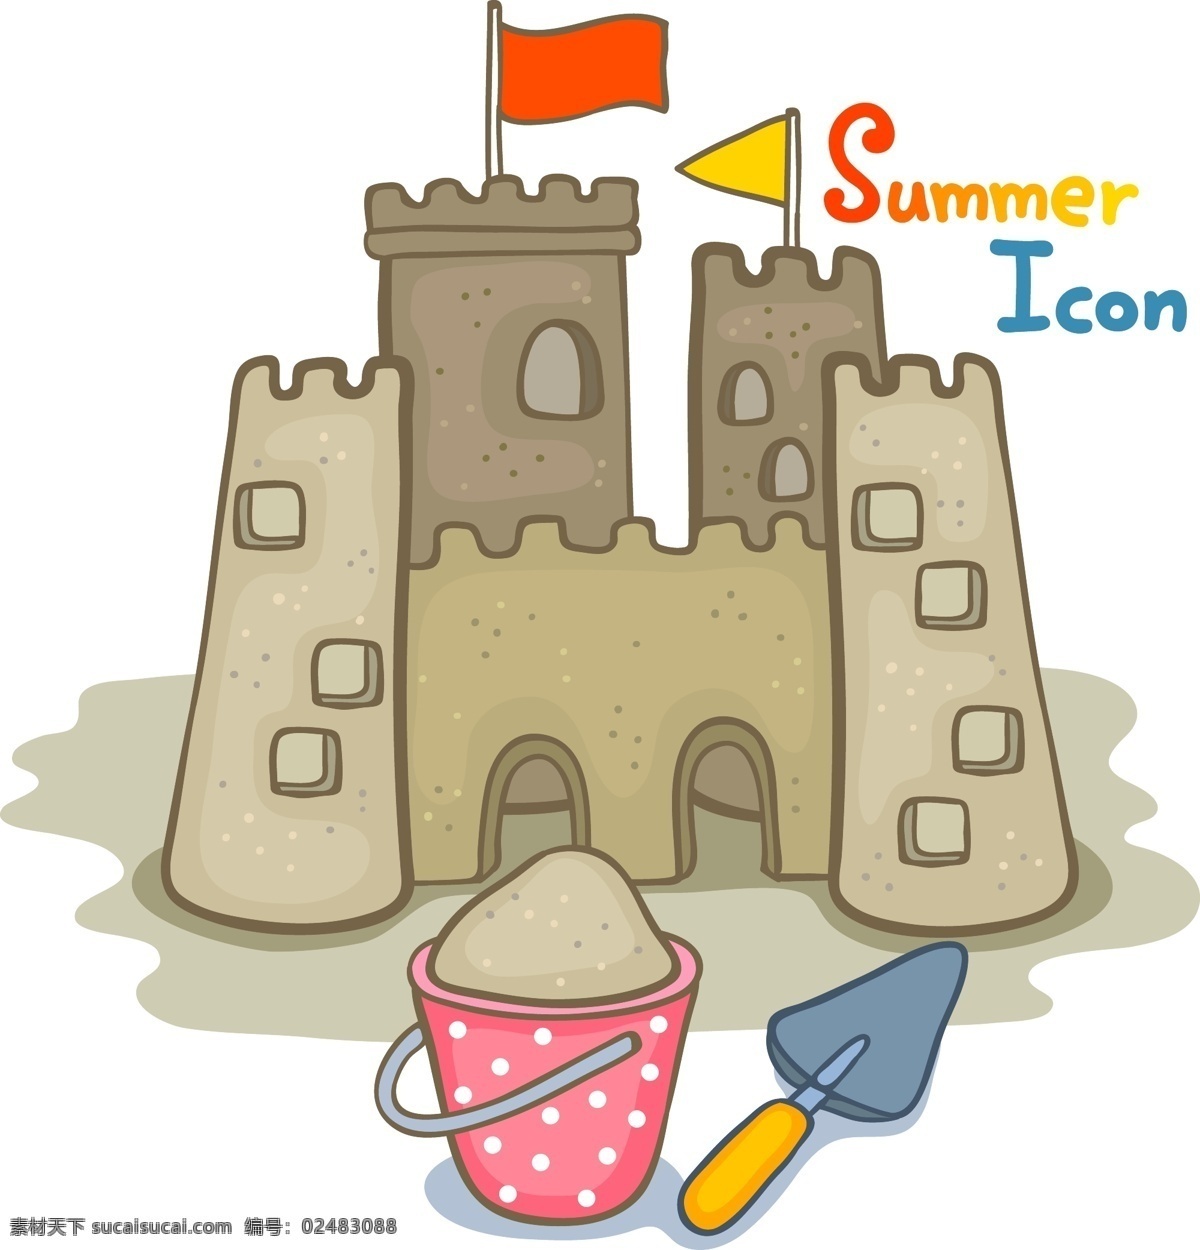 卡通元素 卡通 矢量 卡通城堡素材 卡通城堡 城堡 沙子